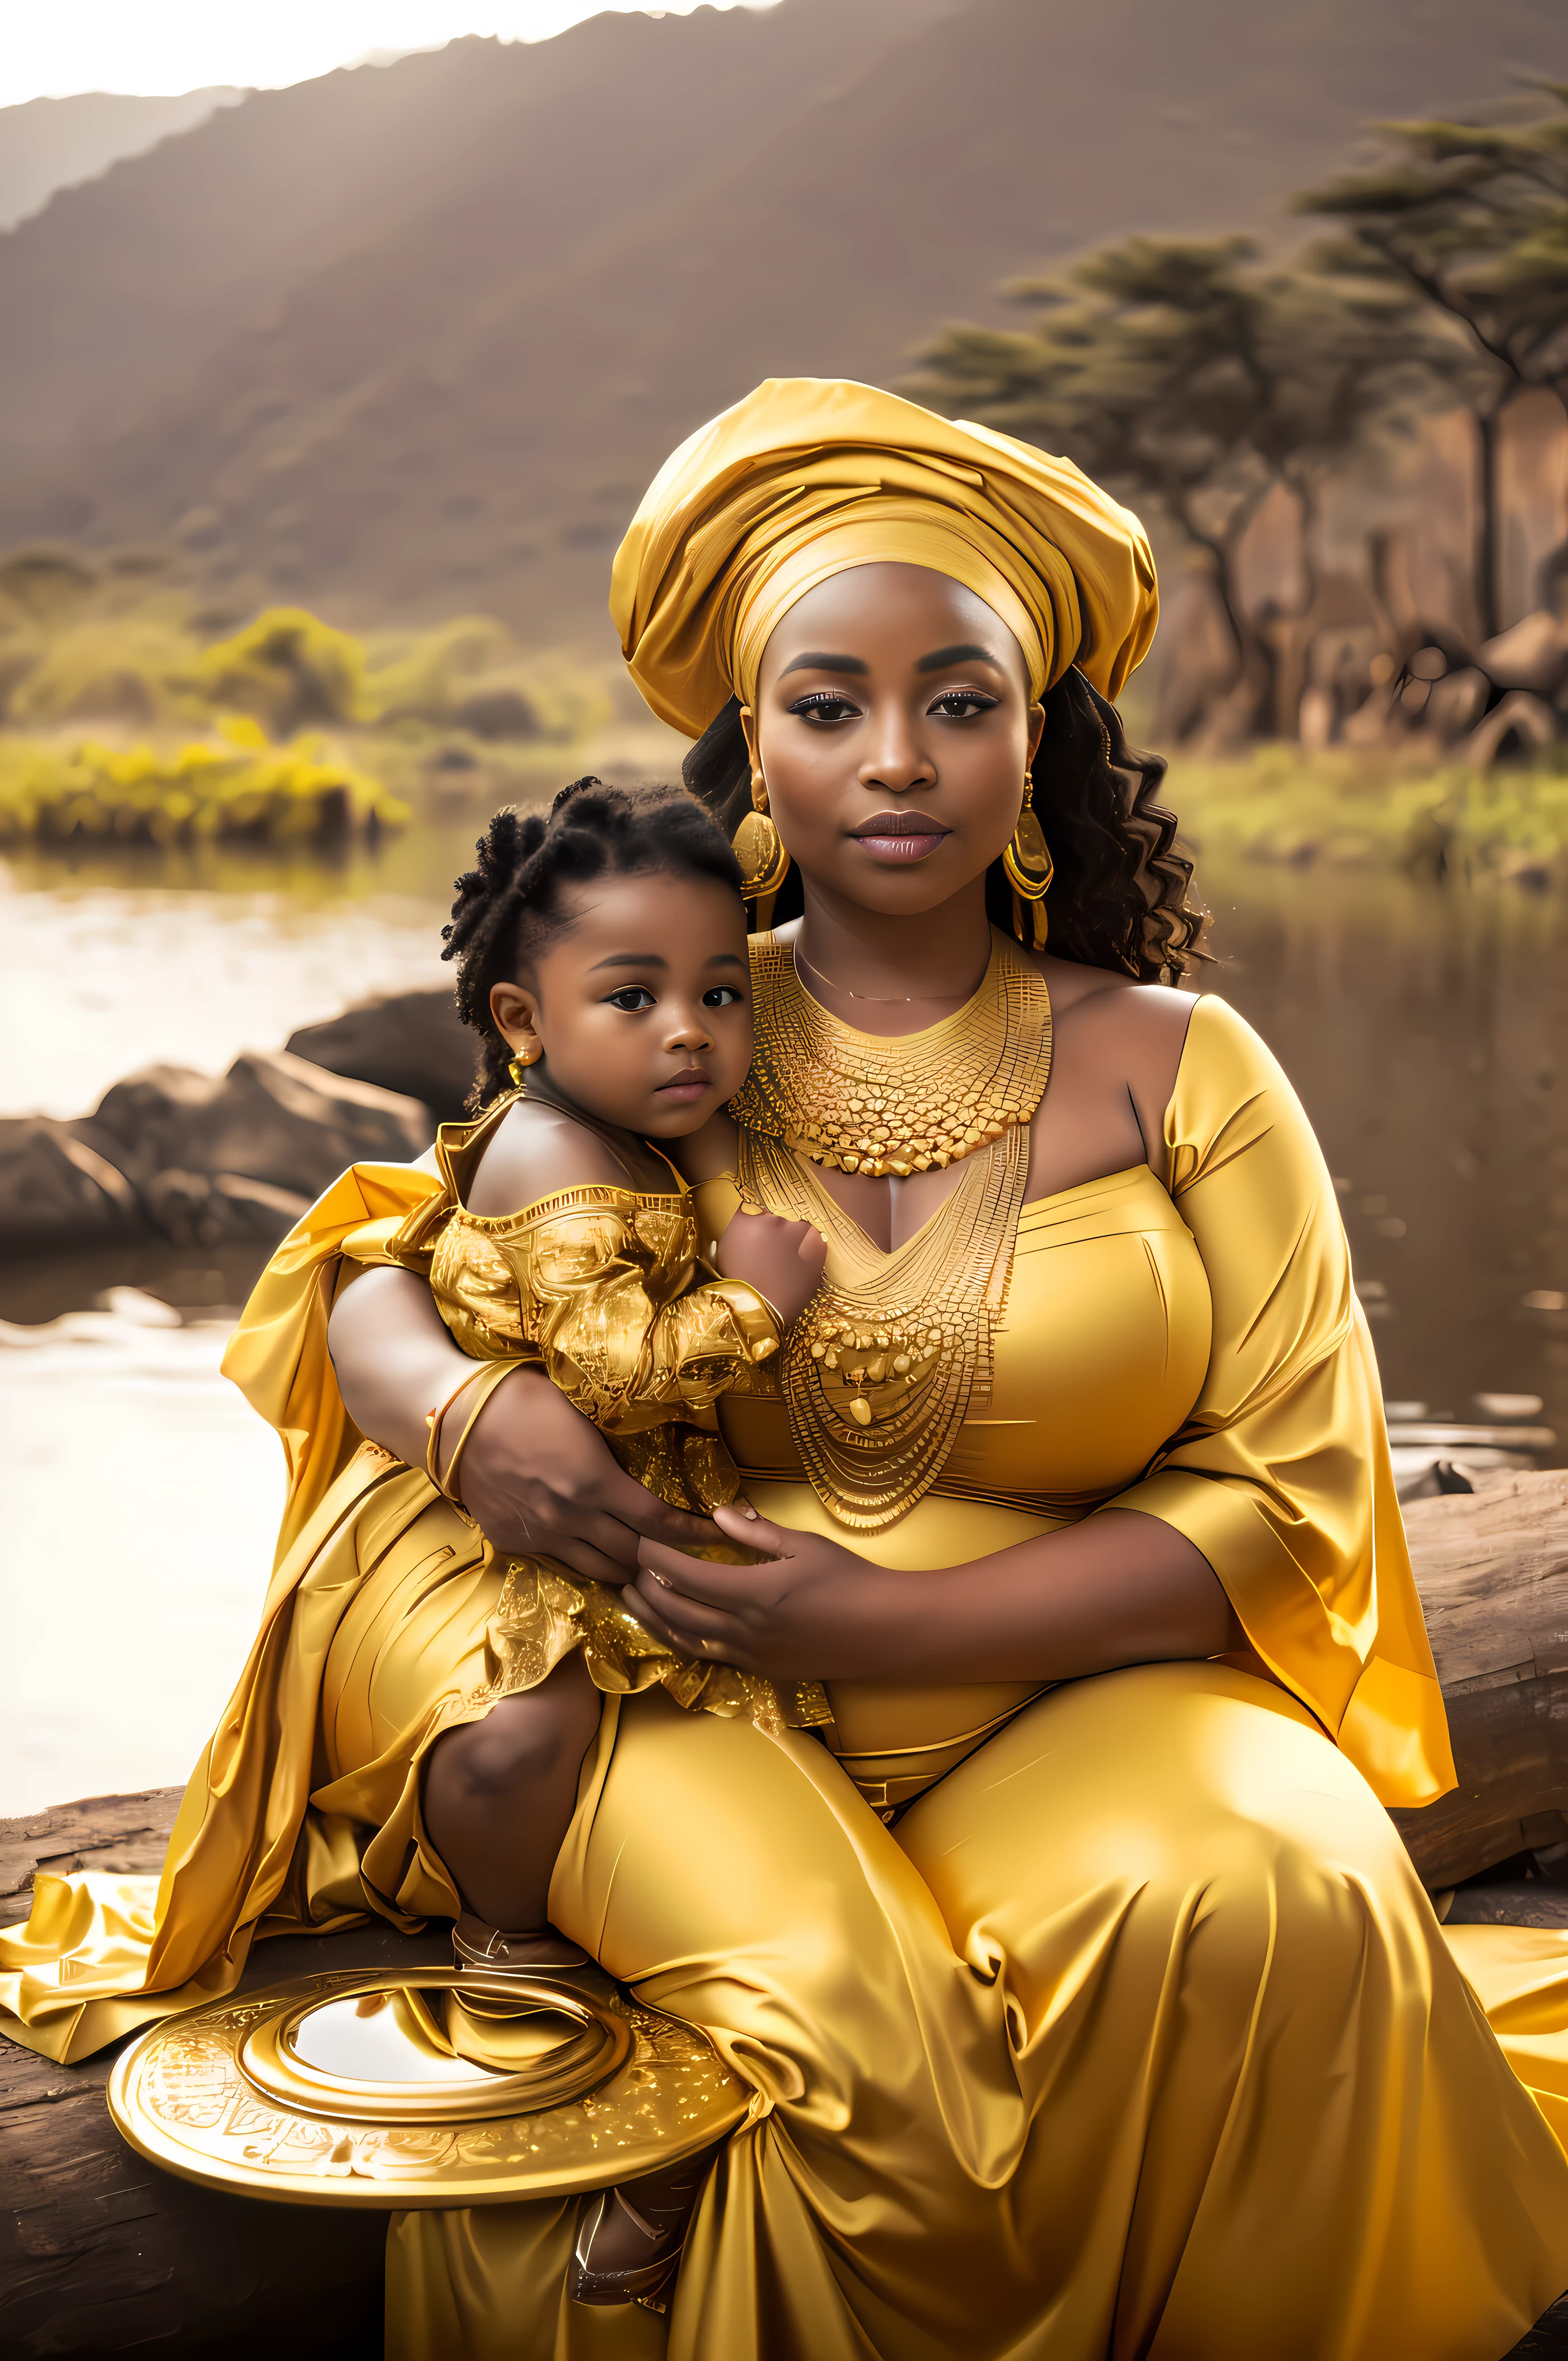 امرأة حامل ترتدي ثوبًا ذهبيًا وتحمل طفلاً, Princesa الأفريقيa deslumbrante, Princesa negra الأفريقيa, Rainha الأفريقيa, أميرة أفريقية, نغمات ذهبية, صورة جميلة, تظهر النغمات الذهبية بشكل طبيعي, mulher الأفريقيa, التصوير الفوتوغرافي ماتيرنا 4K, امراة جميلة, الجمال التقليدي, الأفريقي, مغطاة بالذهب sedoso, Joias الأفريقيas intrincadas, الألوان الذهبية, هالة ذهبية, مغطاة بالذهب